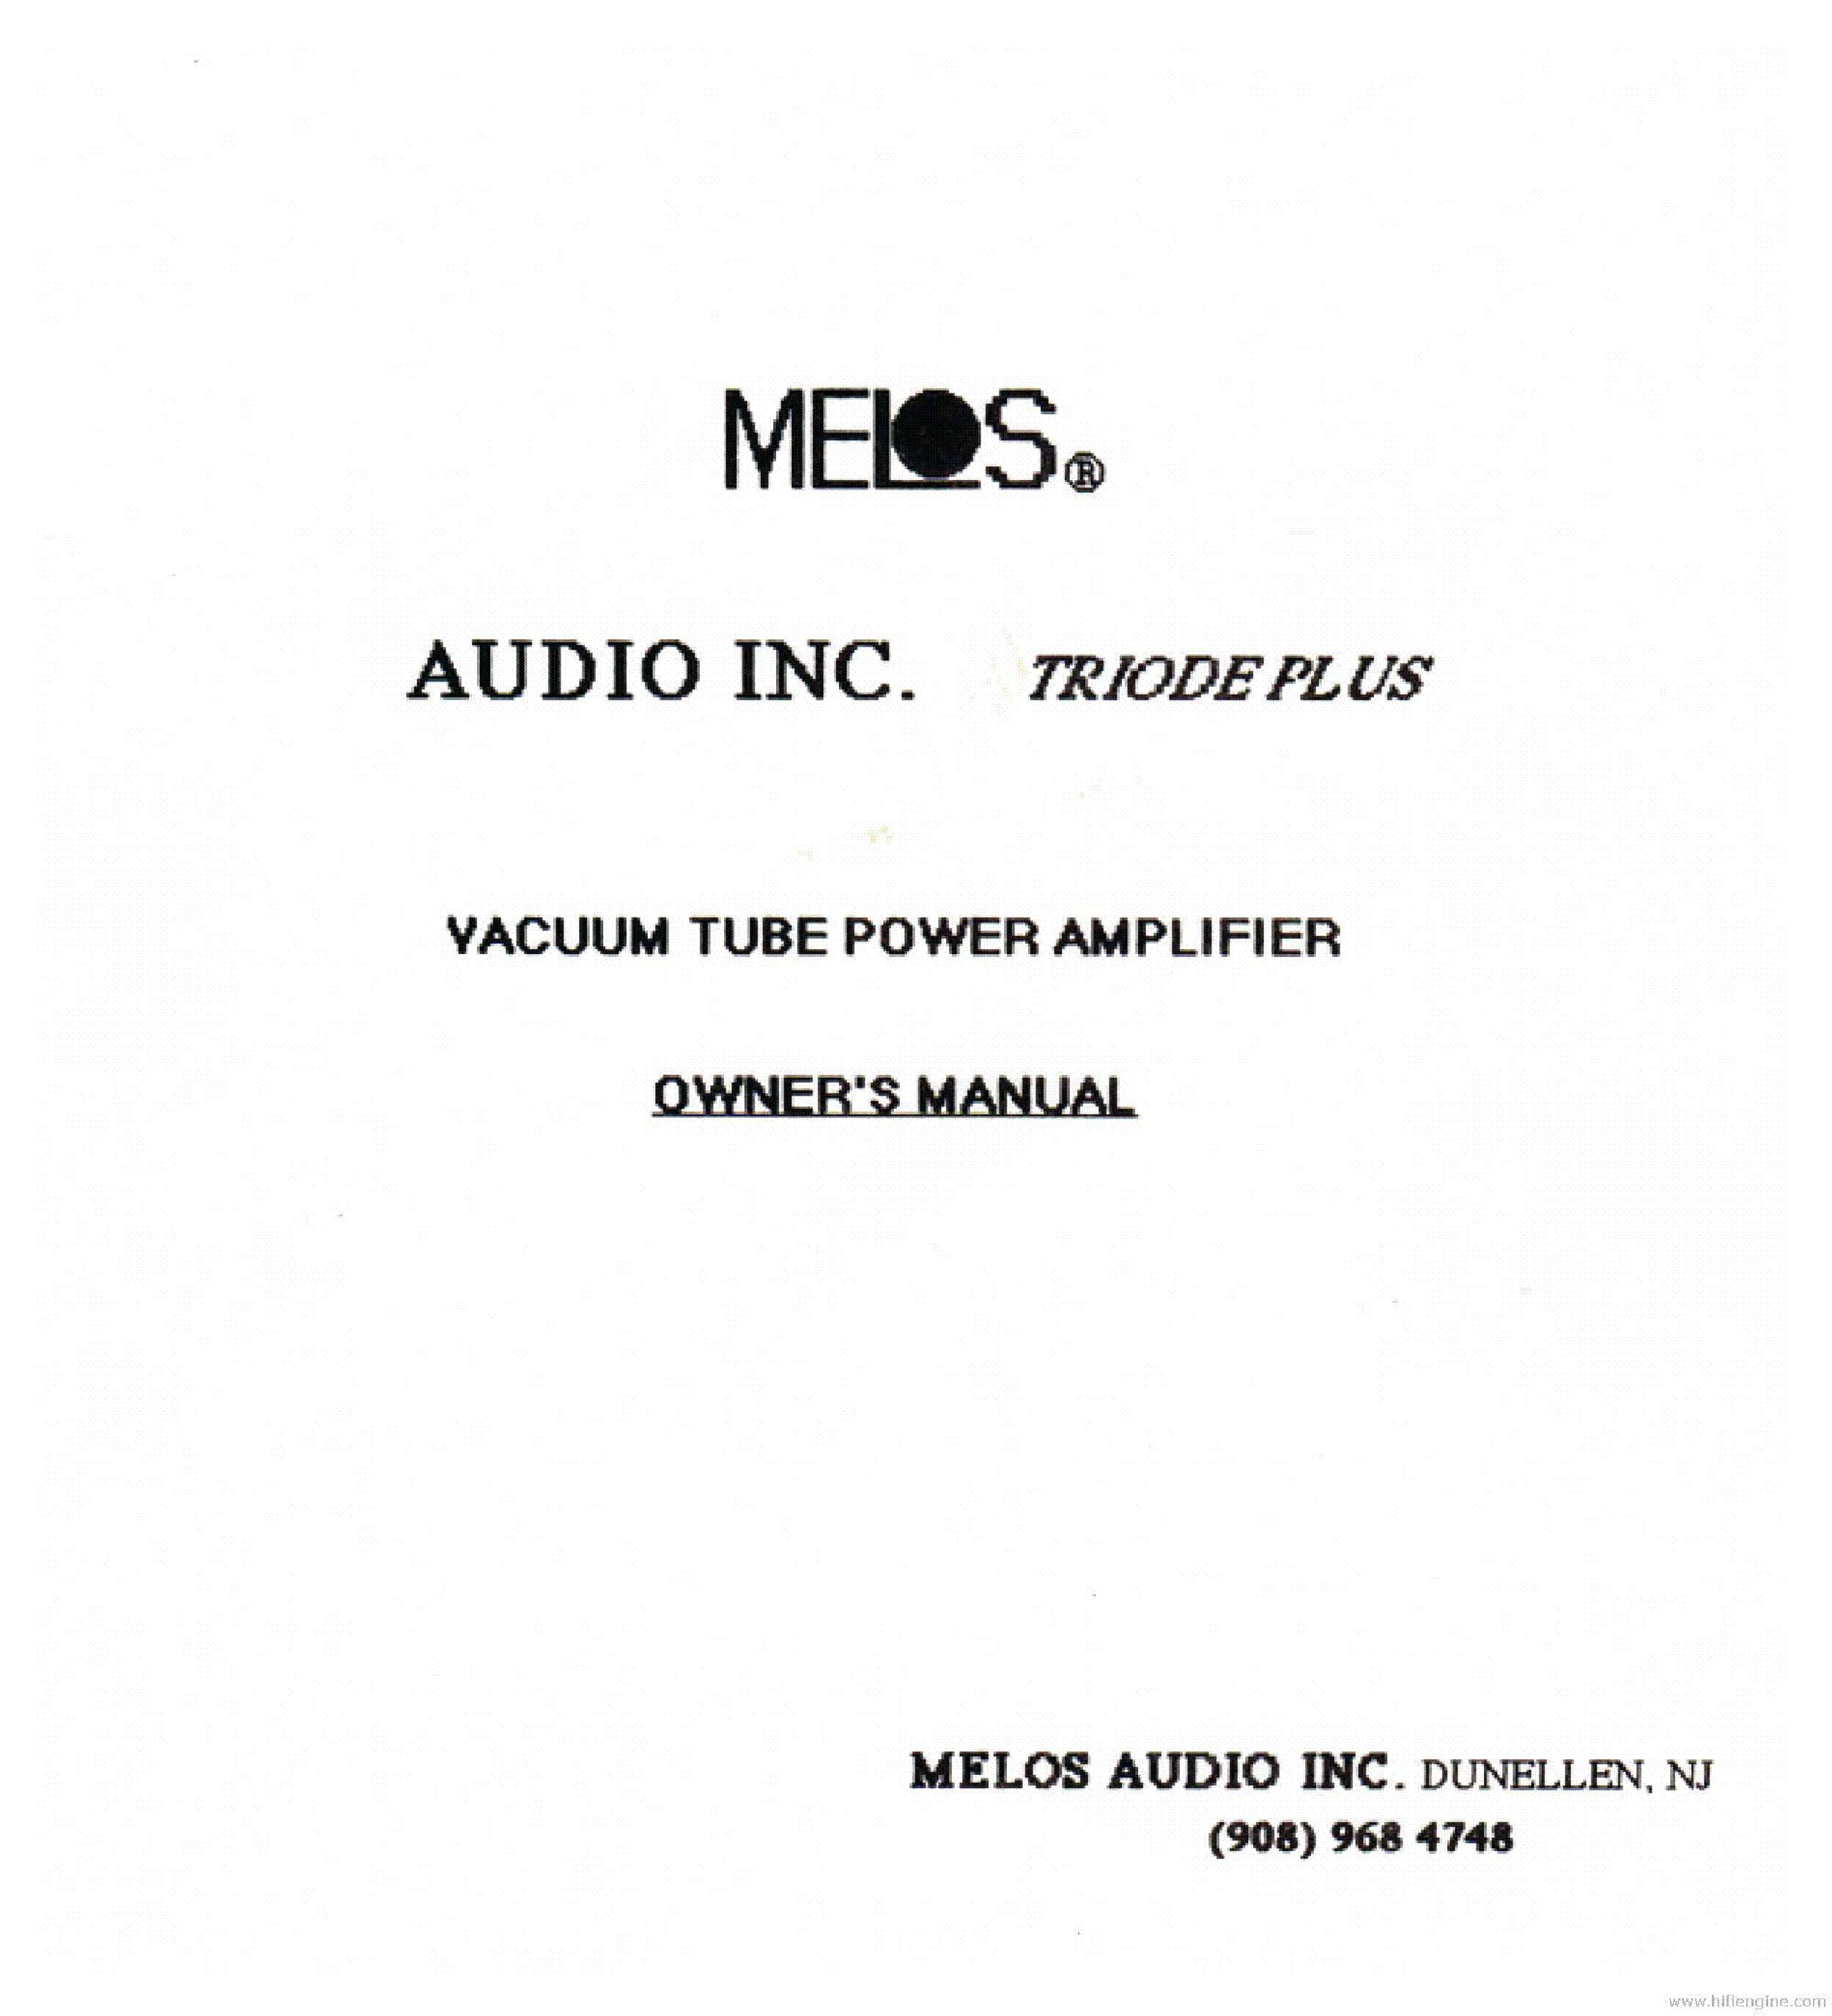 Melos Audio Triode Plus